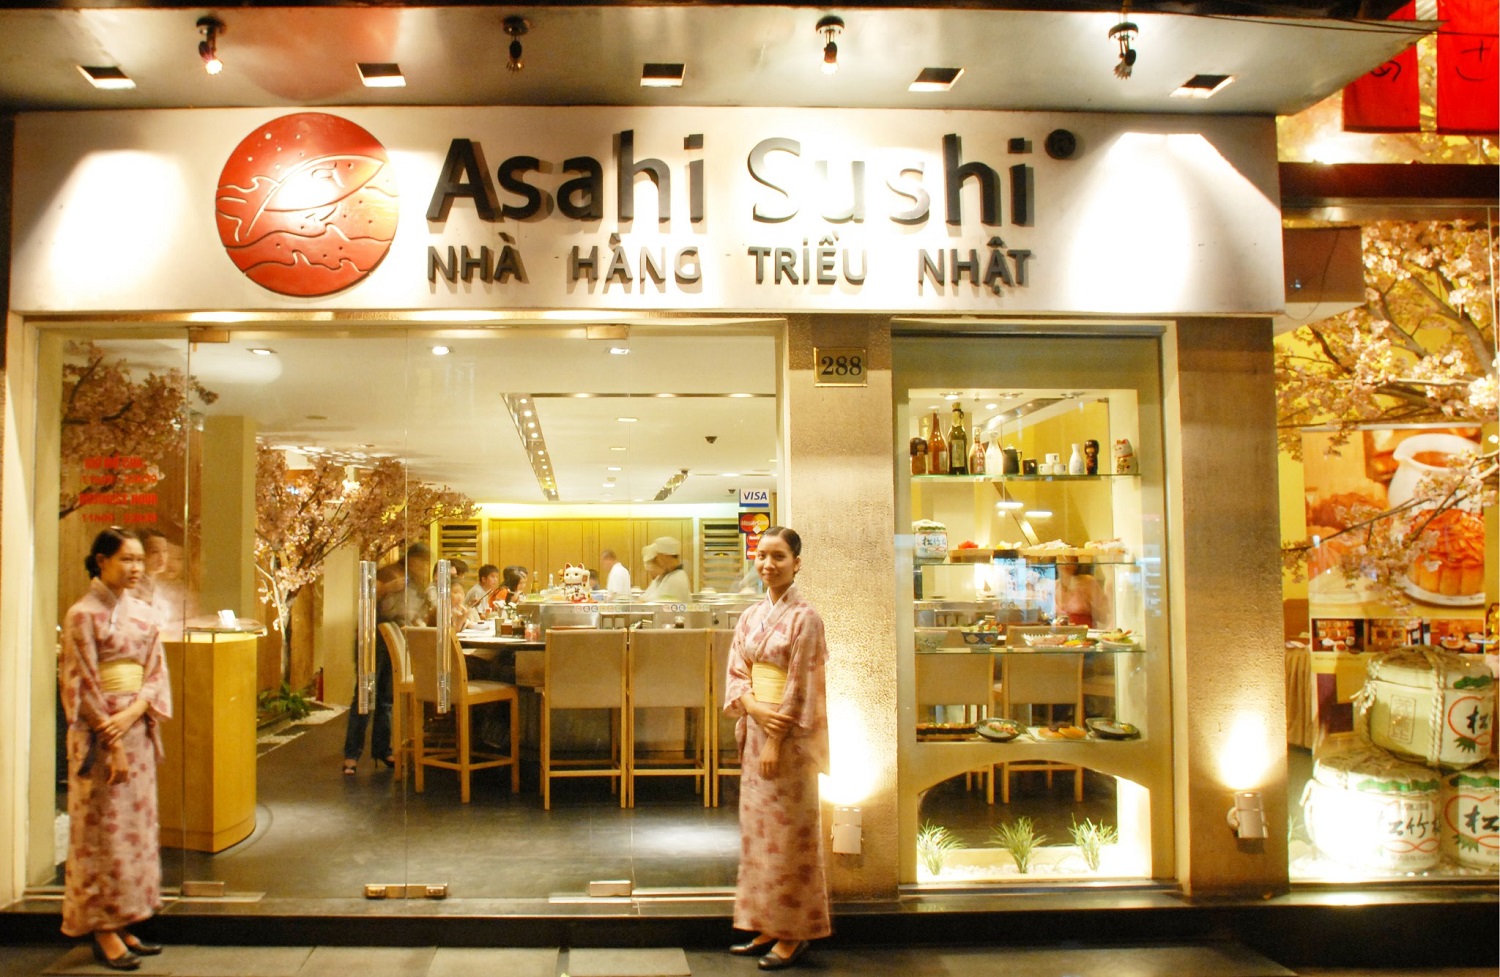 Nha hang Trieu Nhat Asahi Sushi Xu so Phu Tang thu nho giua long Ha Noi 01 1640124072